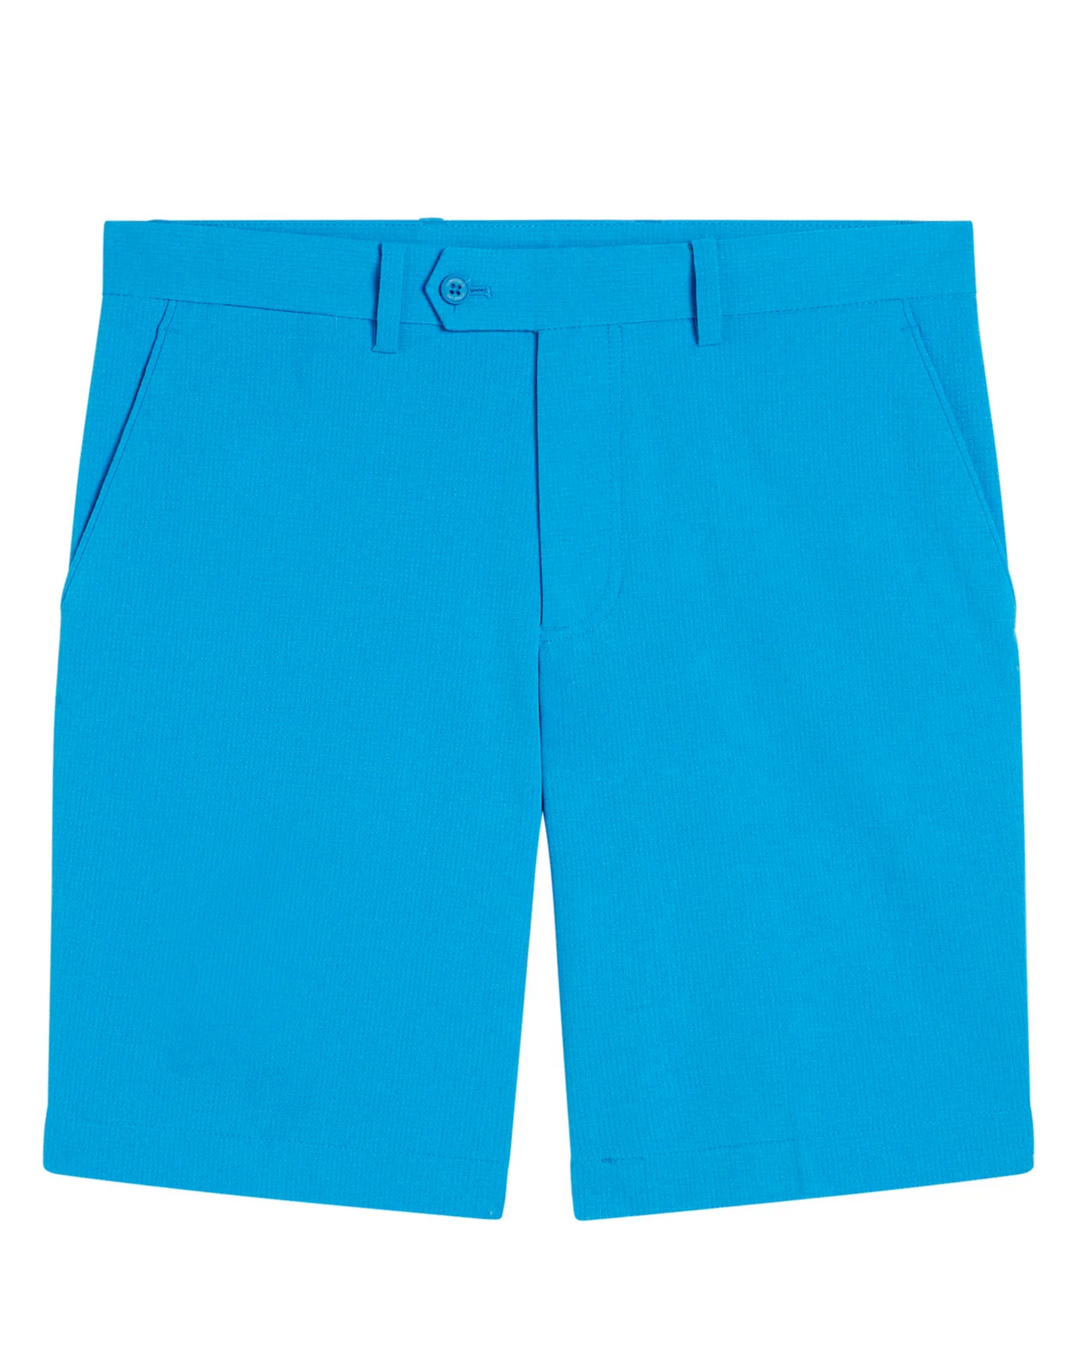 J.Lindeberg Mens Vent Shorts - BRILLIANT BLUE